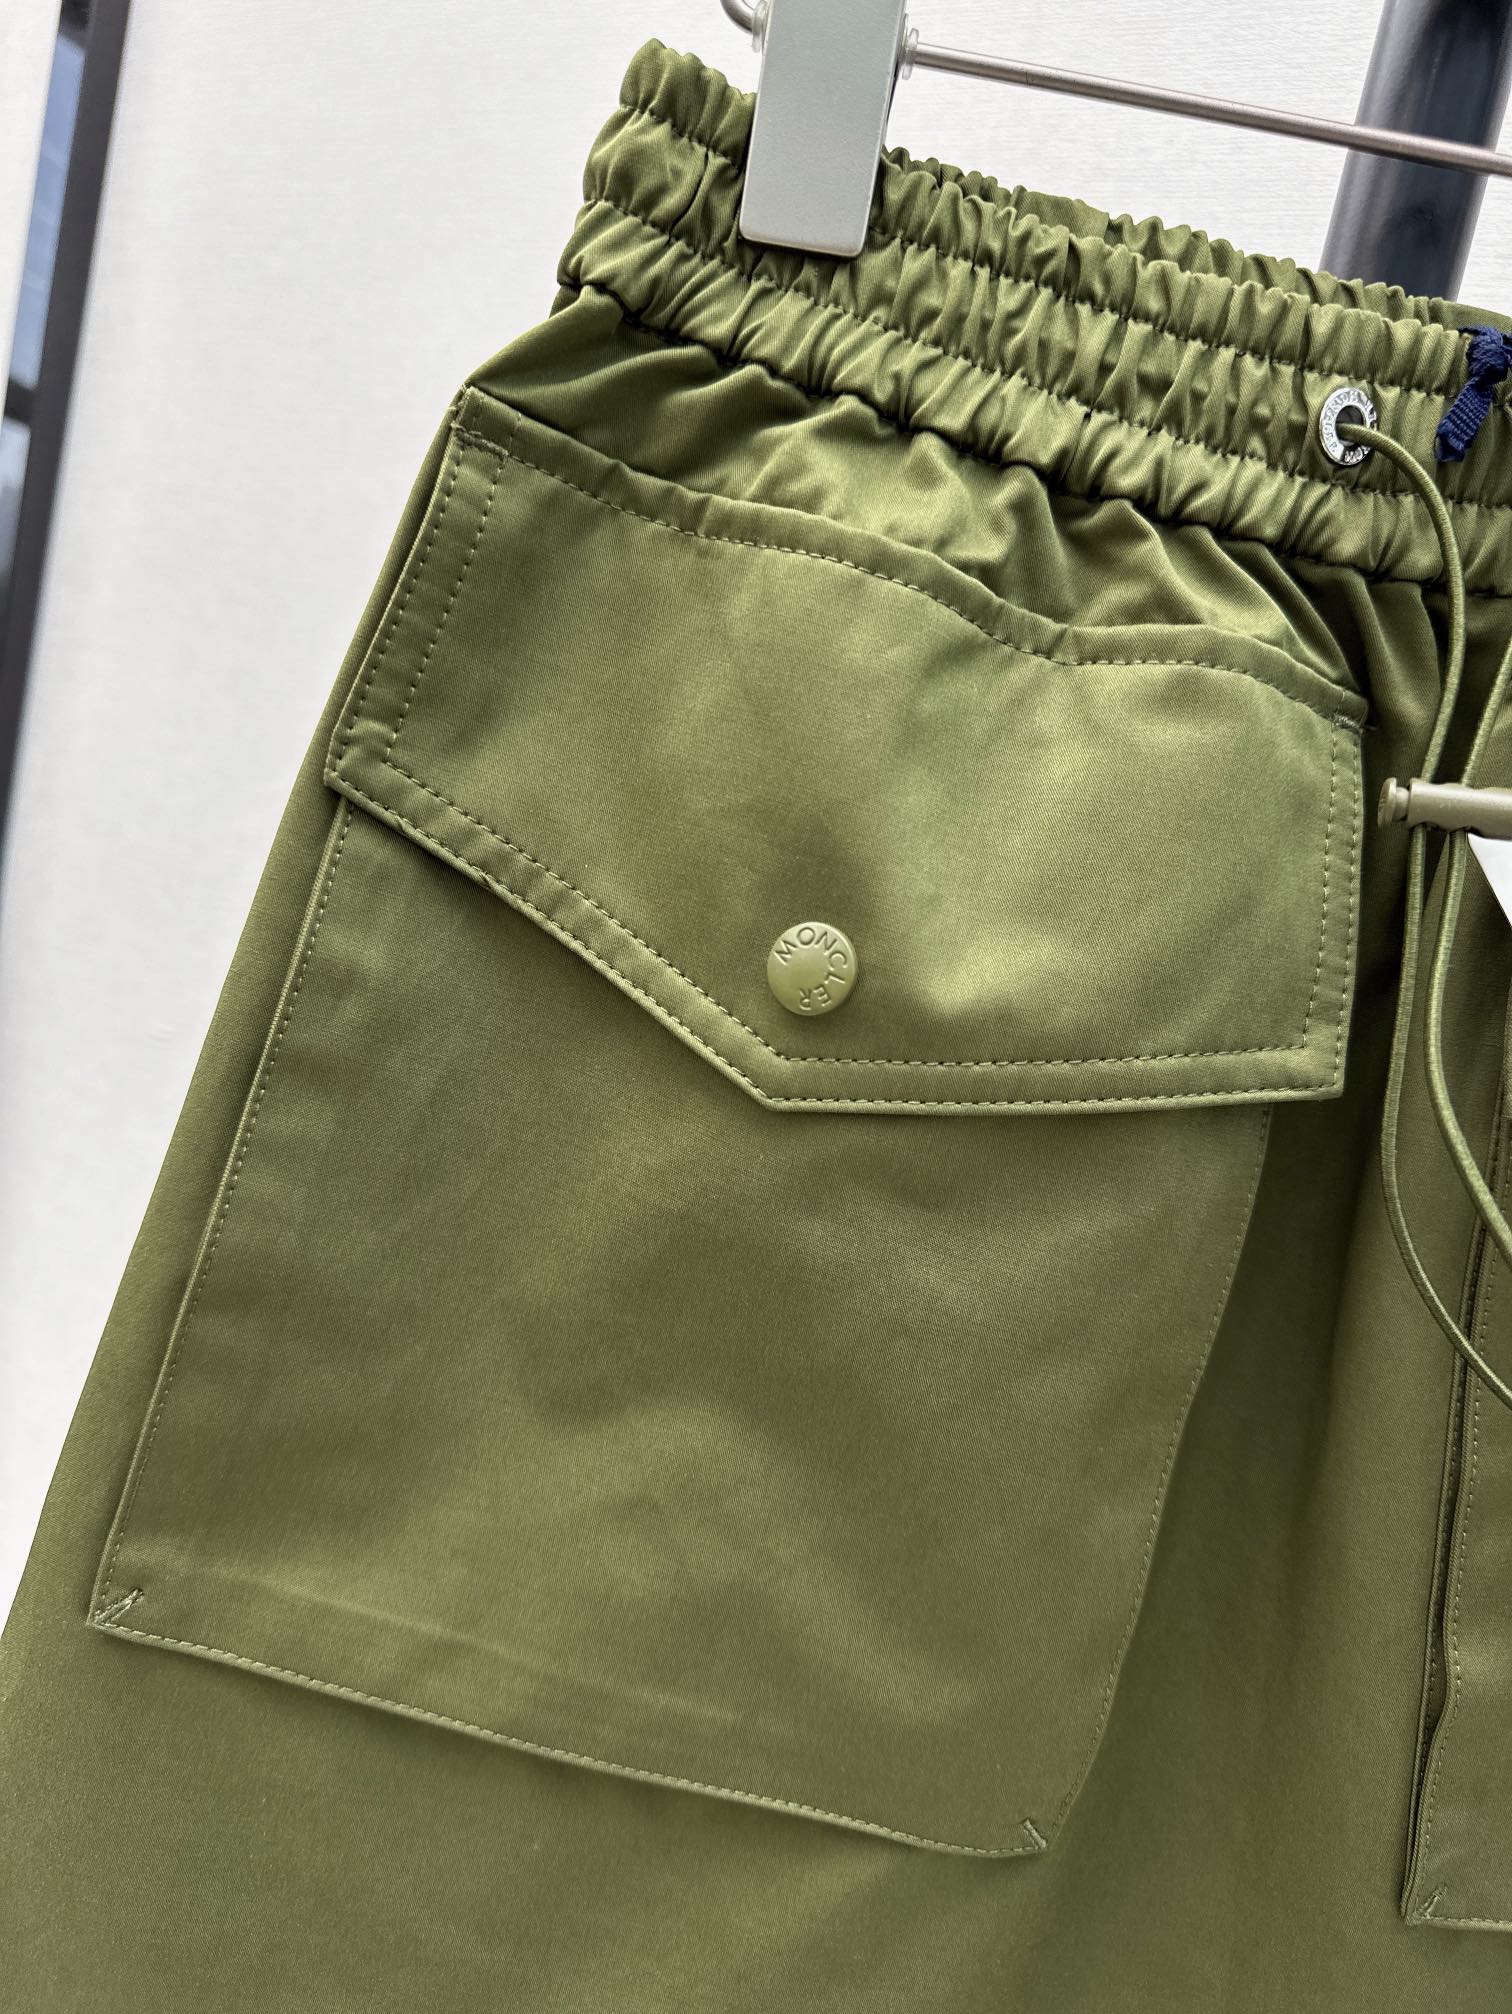 原单品质Mc24Ss春夏最新款工装口袋小半裙松紧腰设计气质少女风减龄又时髦单品定制五金配件低调奢华经典版